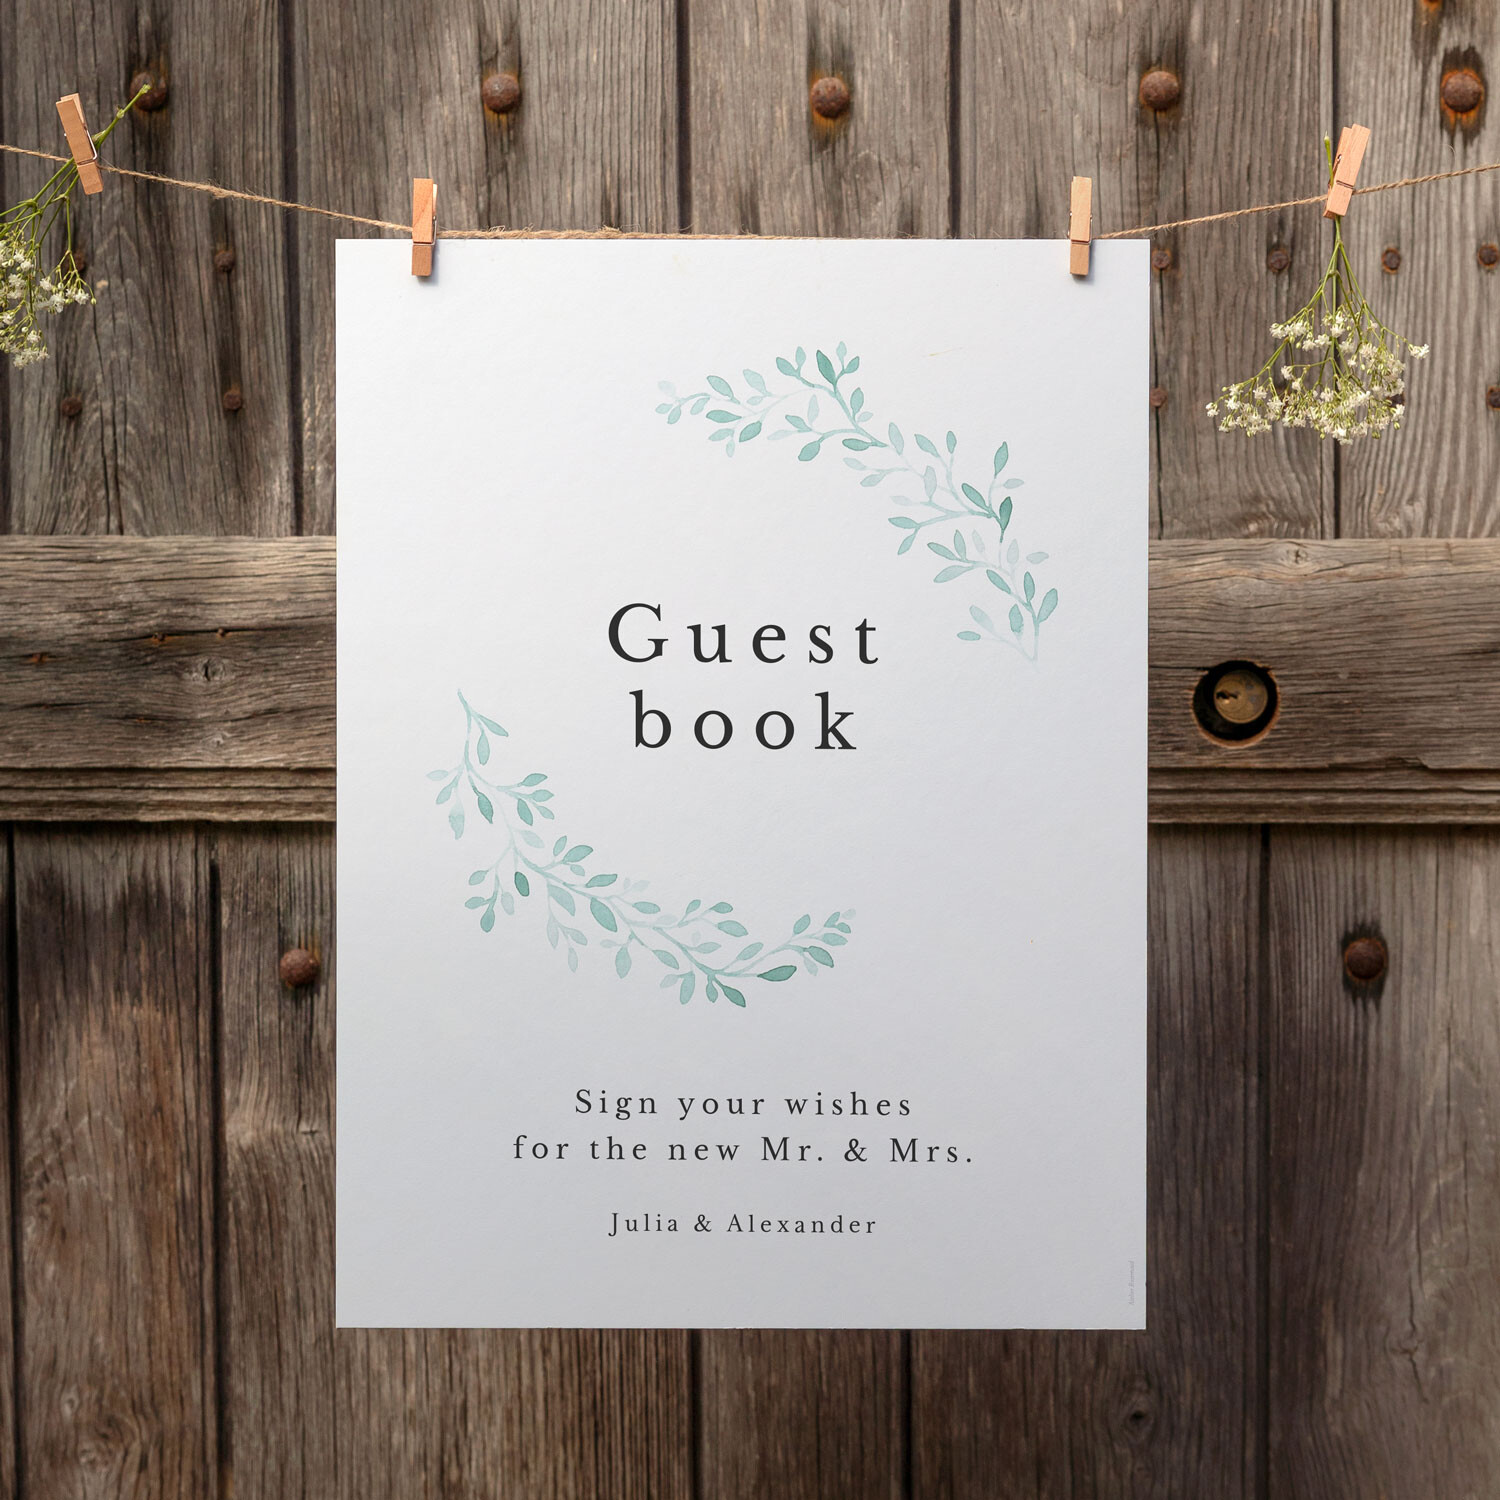 Wedding Guest Book Messages - Rosemood